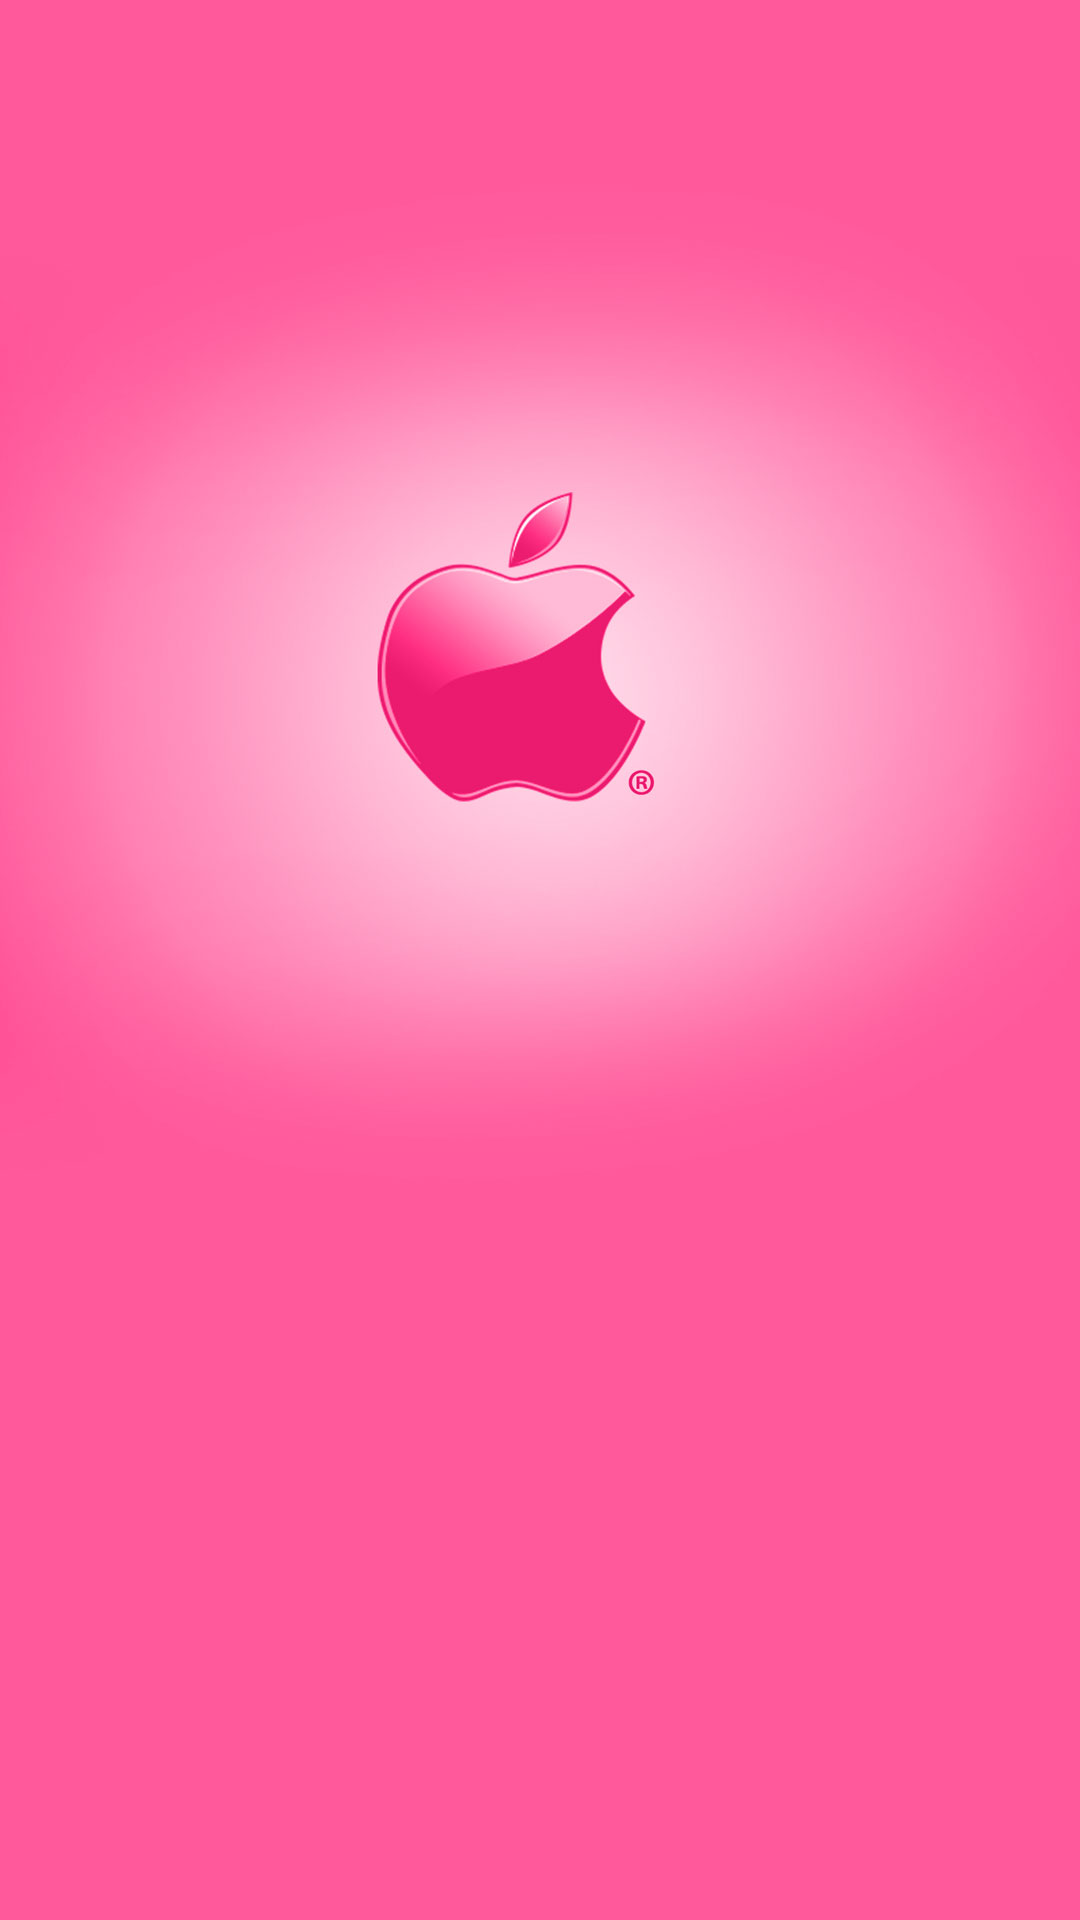 Bộ hình nền động cho iOS 9 tuyệt đẹp trên iPhone 6 plus 6 ip 5s 5